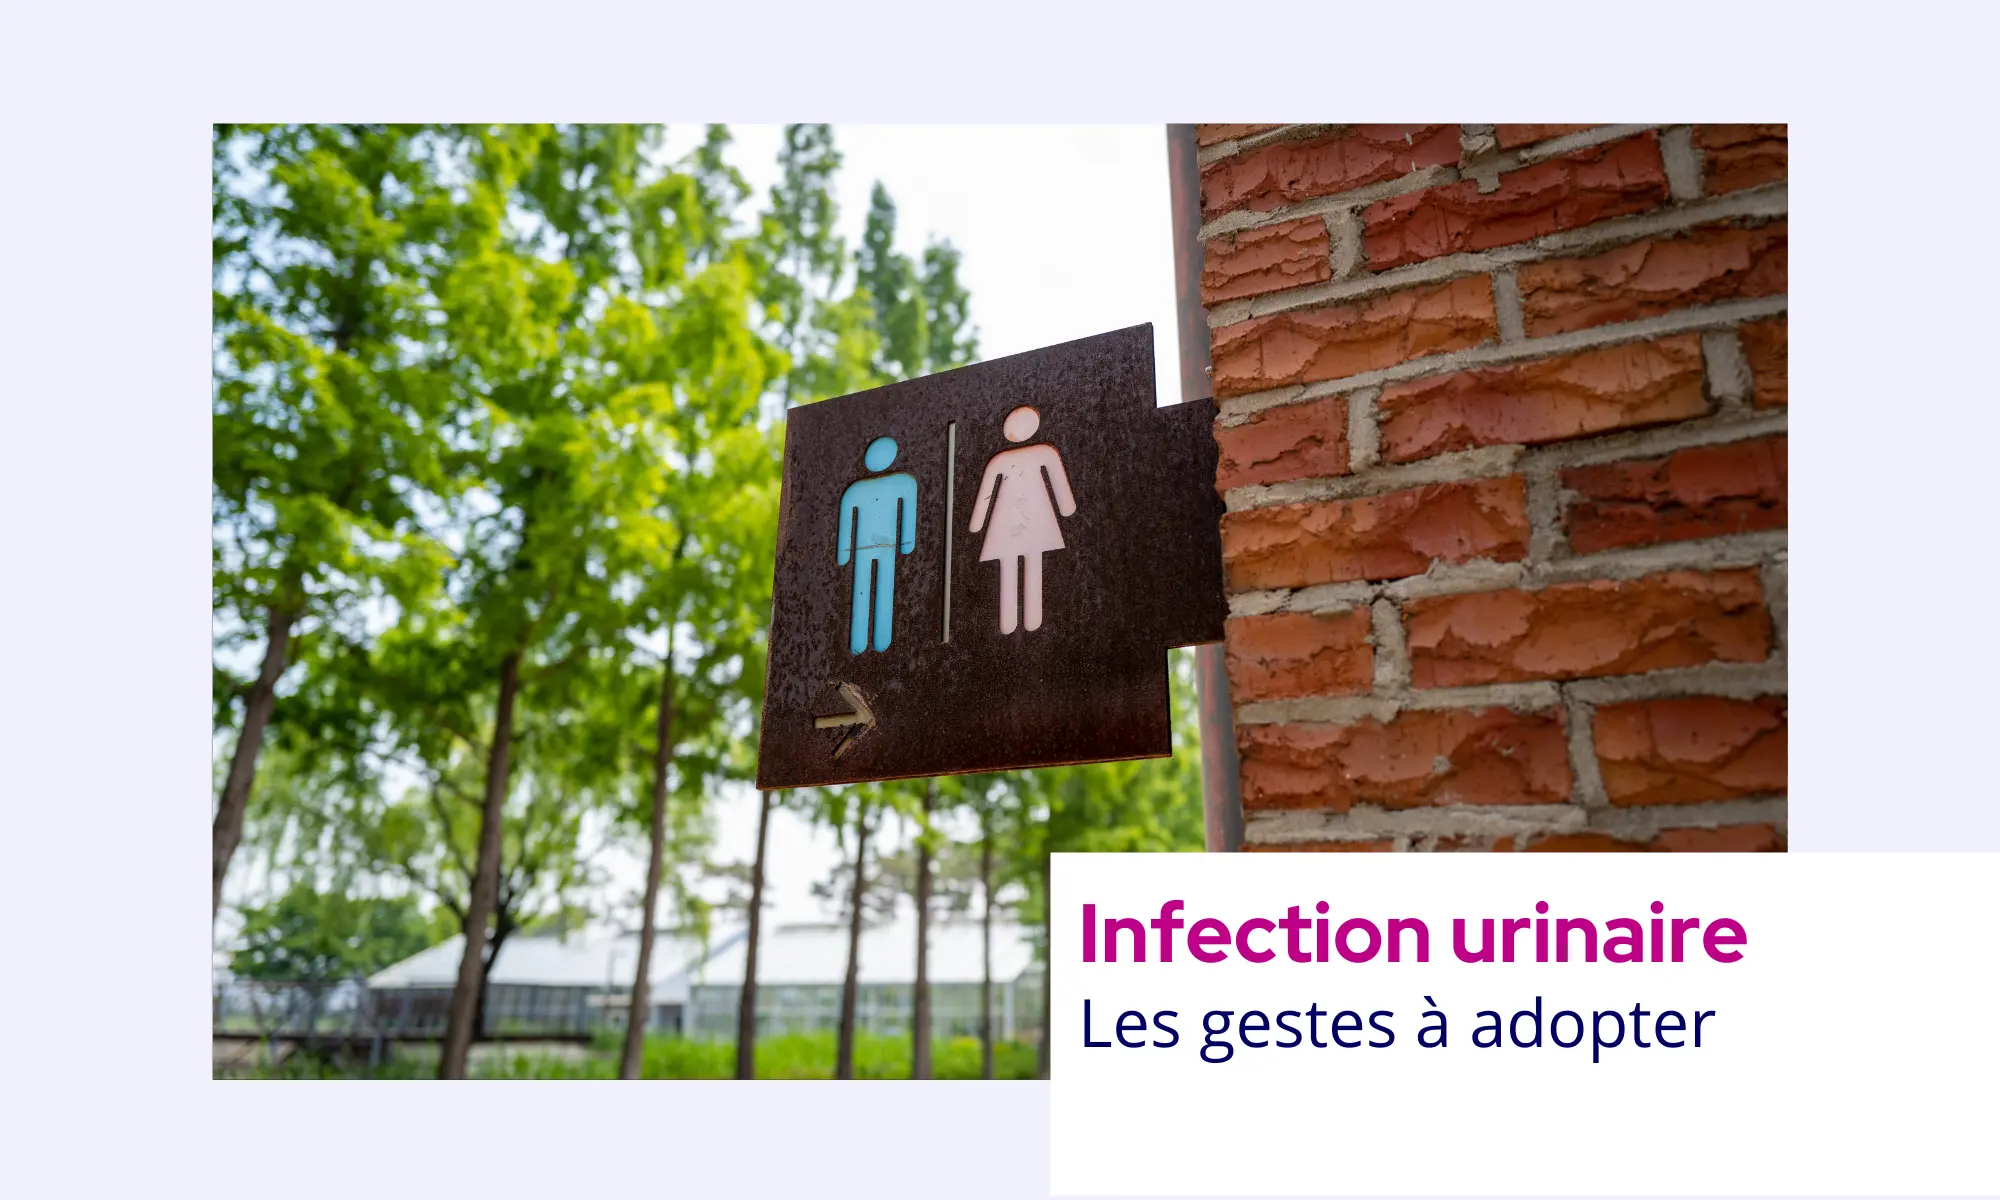 Cystite, Infection urinaire - prevention et traitement - Blog Concilio